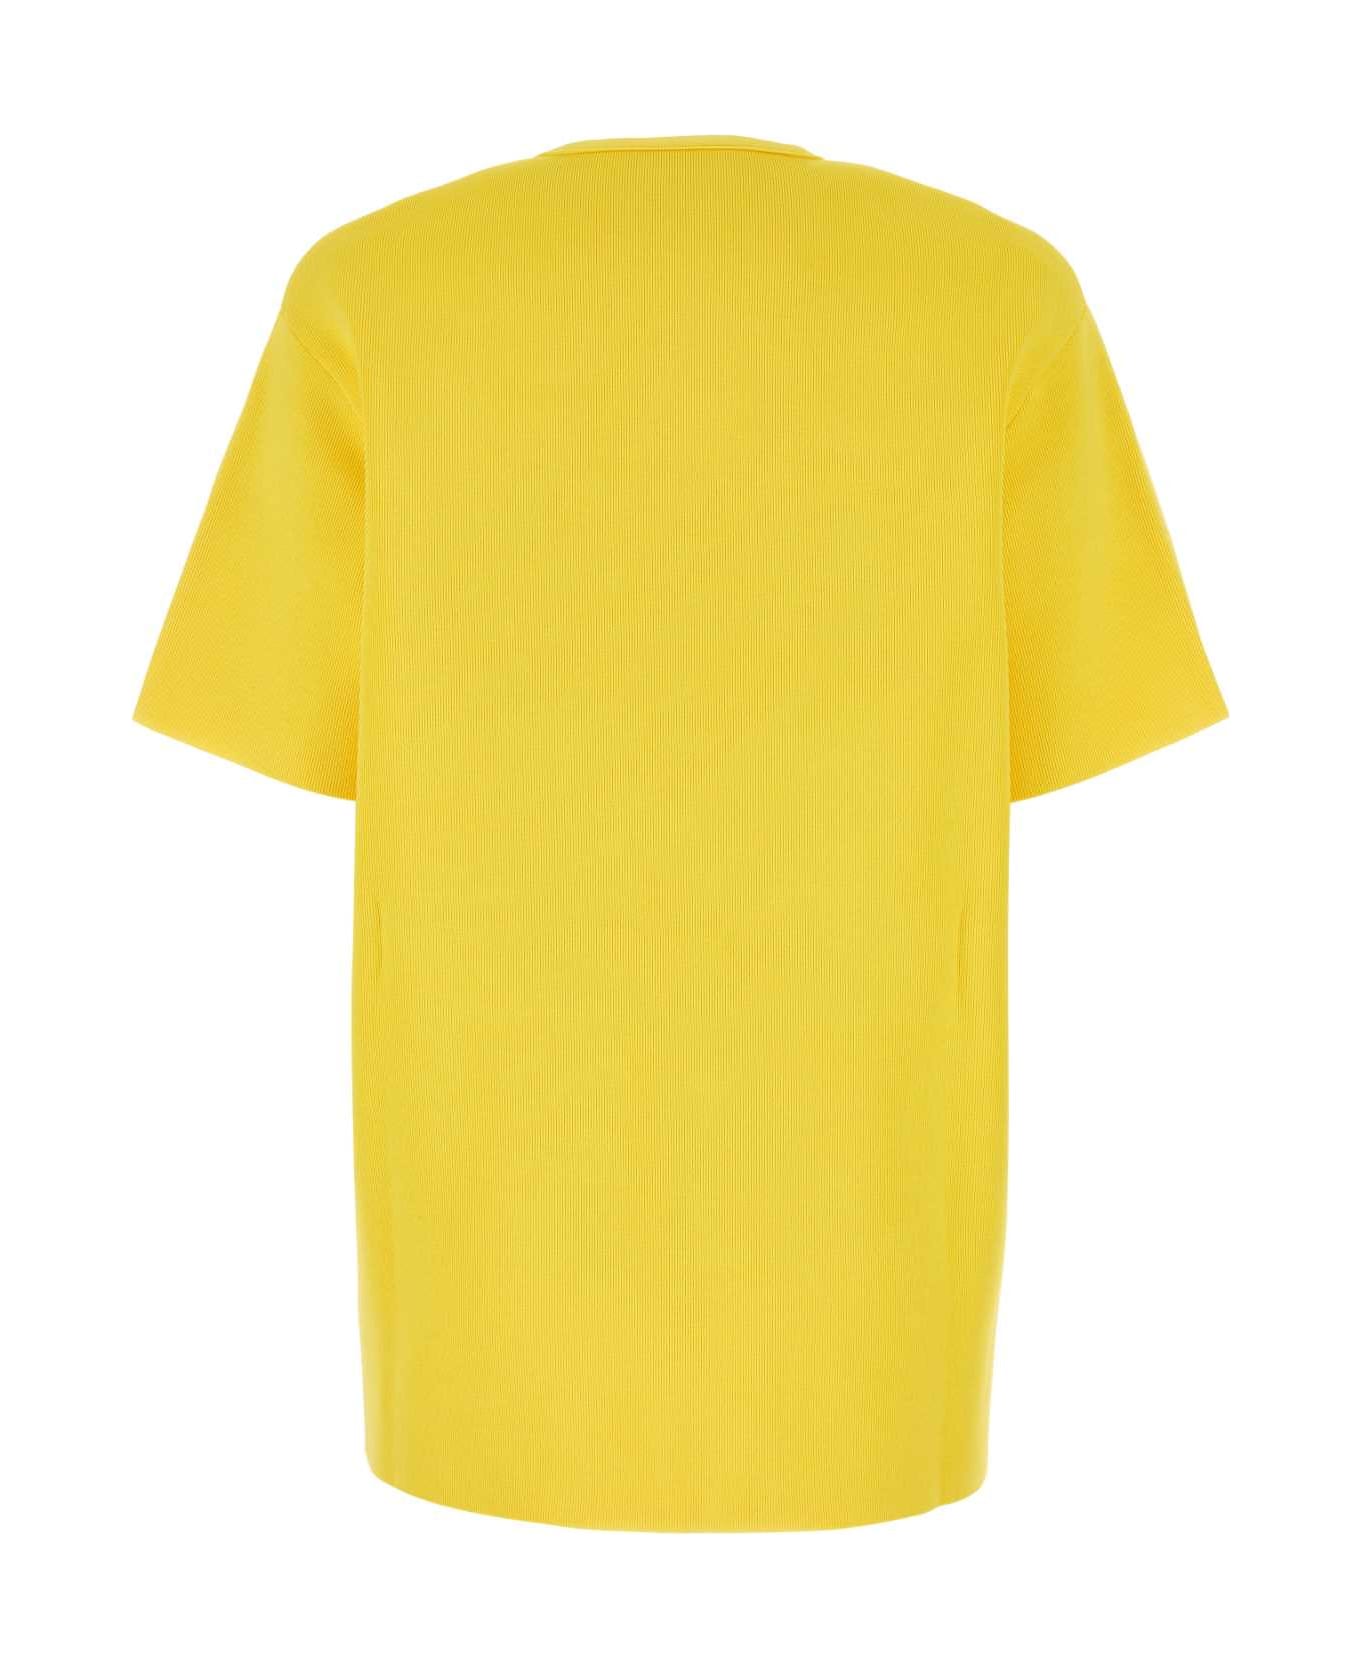 Jil Sander Yellow Viscose Blend T-shirt - 736 Tシャツ